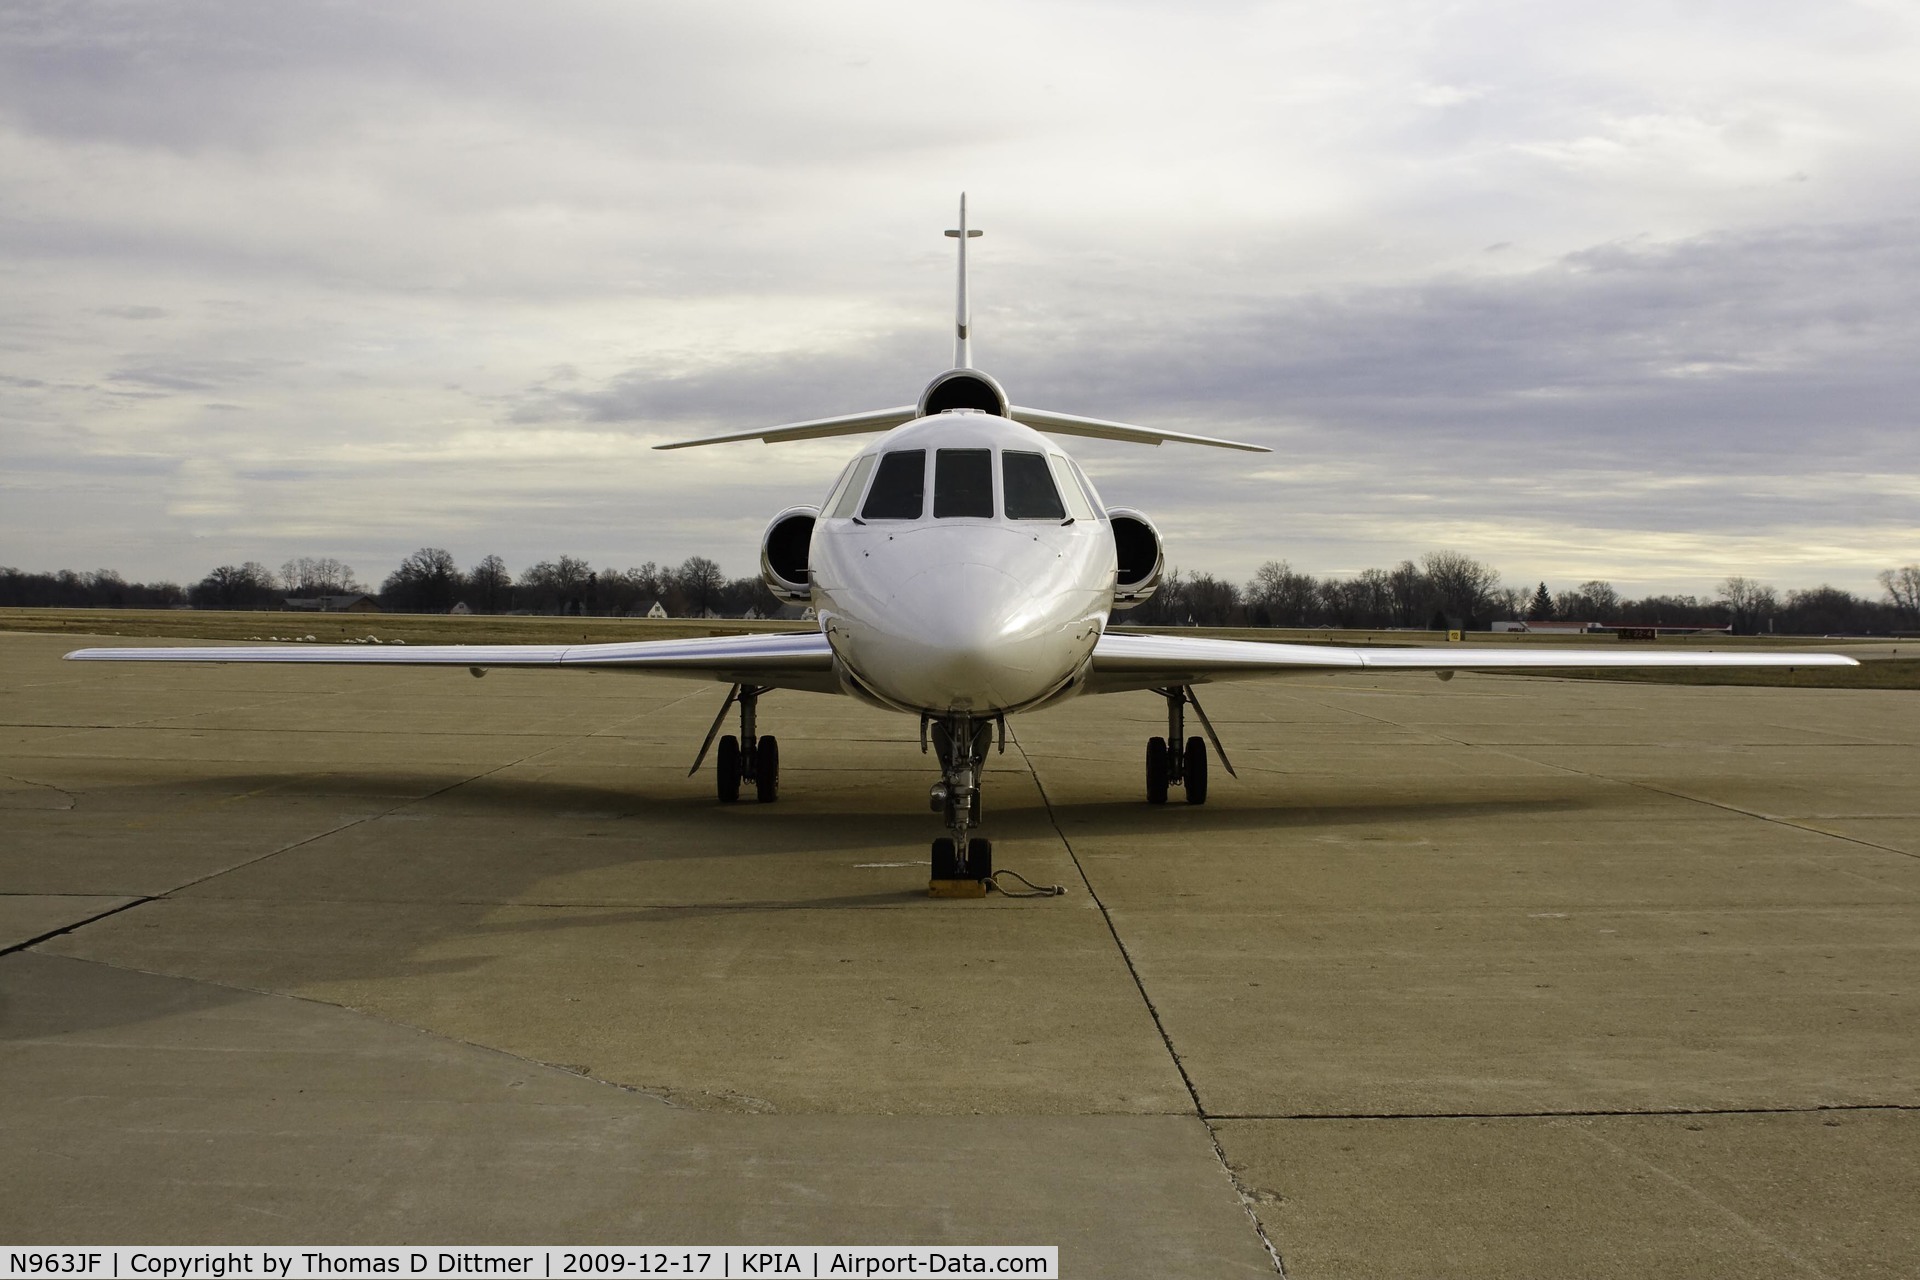 N963JF, 1980 Dassault Falcon 50 C/N 18, N963Jf